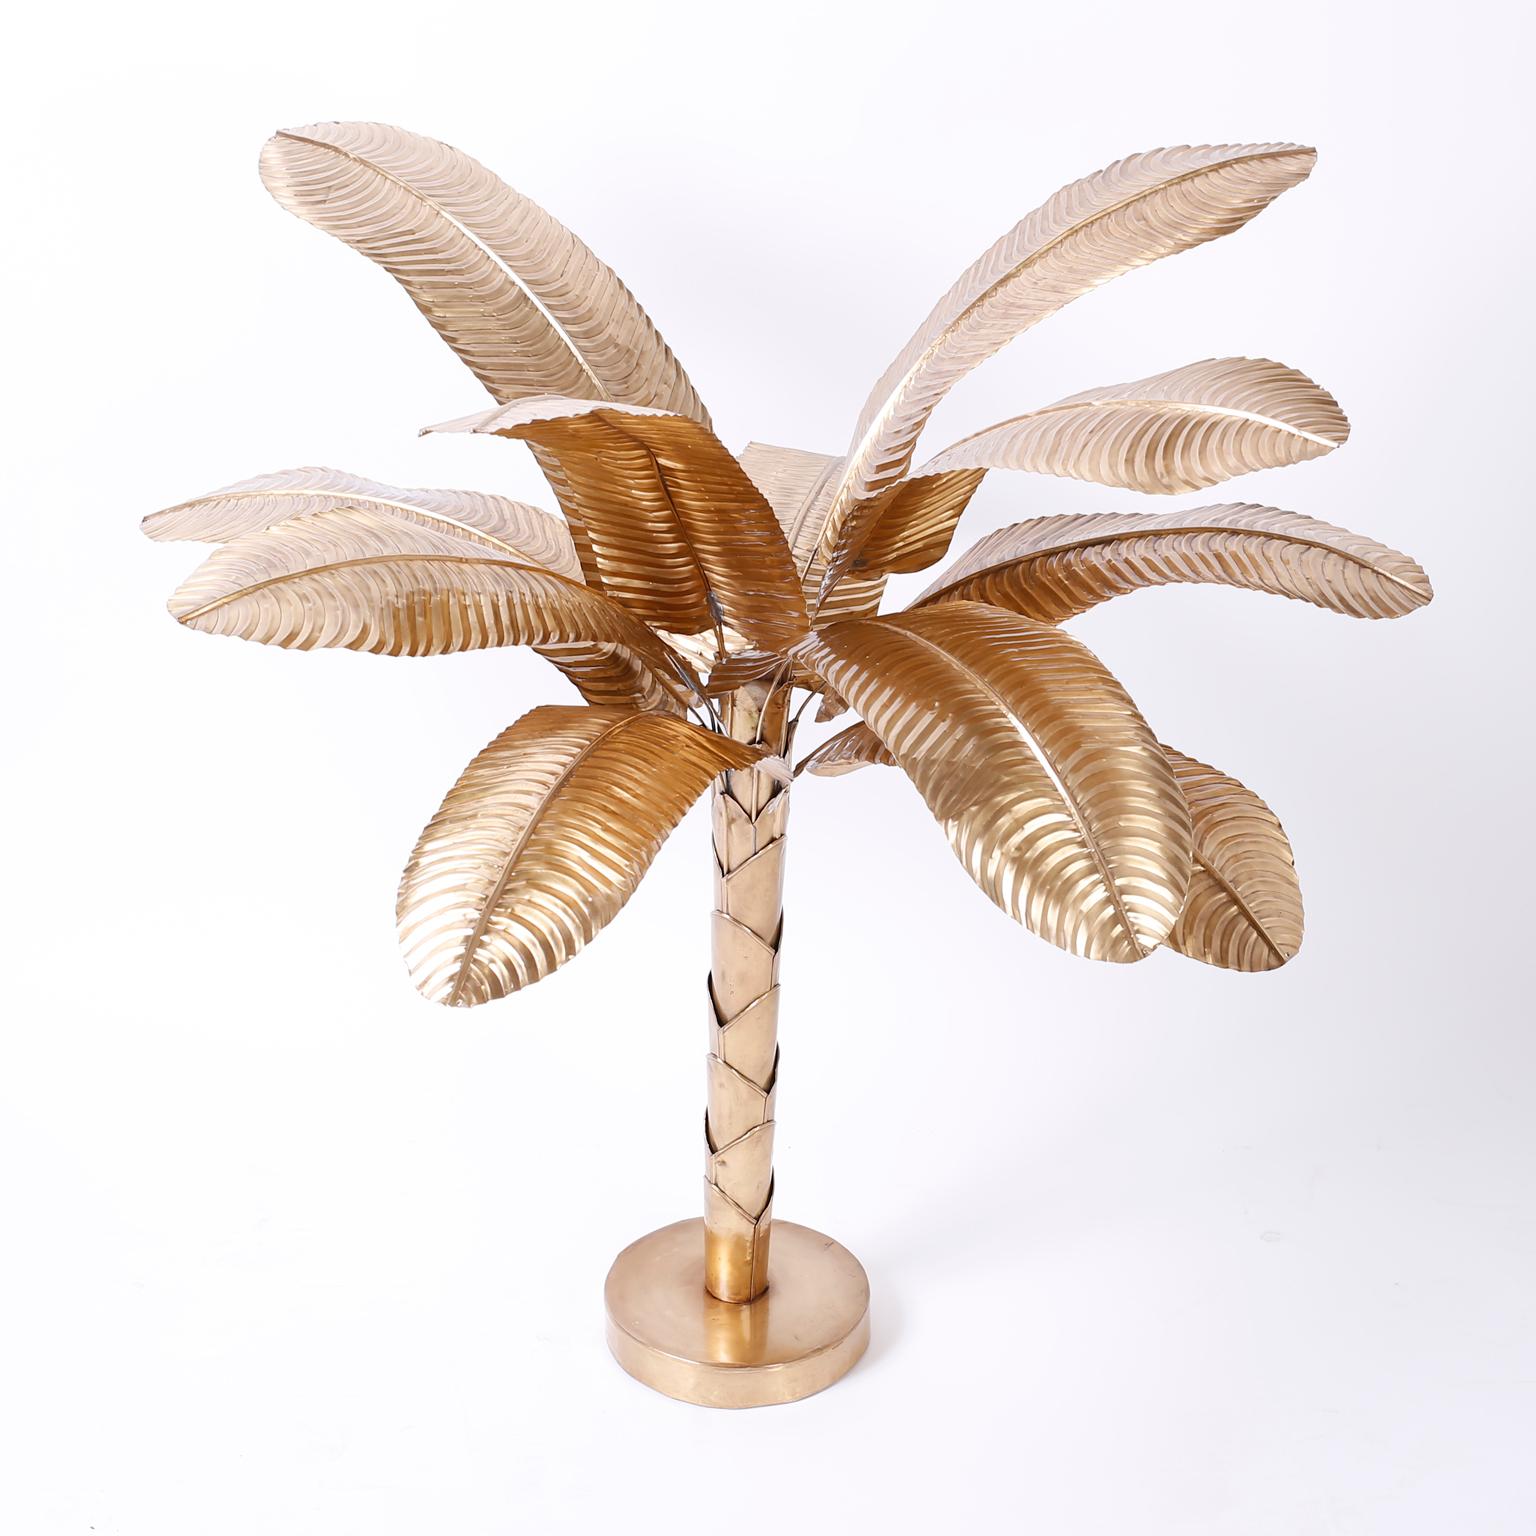 Ce palmier ou bananier de table en laiton stylisé du milieu du siècle, à l'ambiance tropicale, convient aux intérieurs traditionnels ou modernes. Poli à la main et laqué pour un entretien facile.